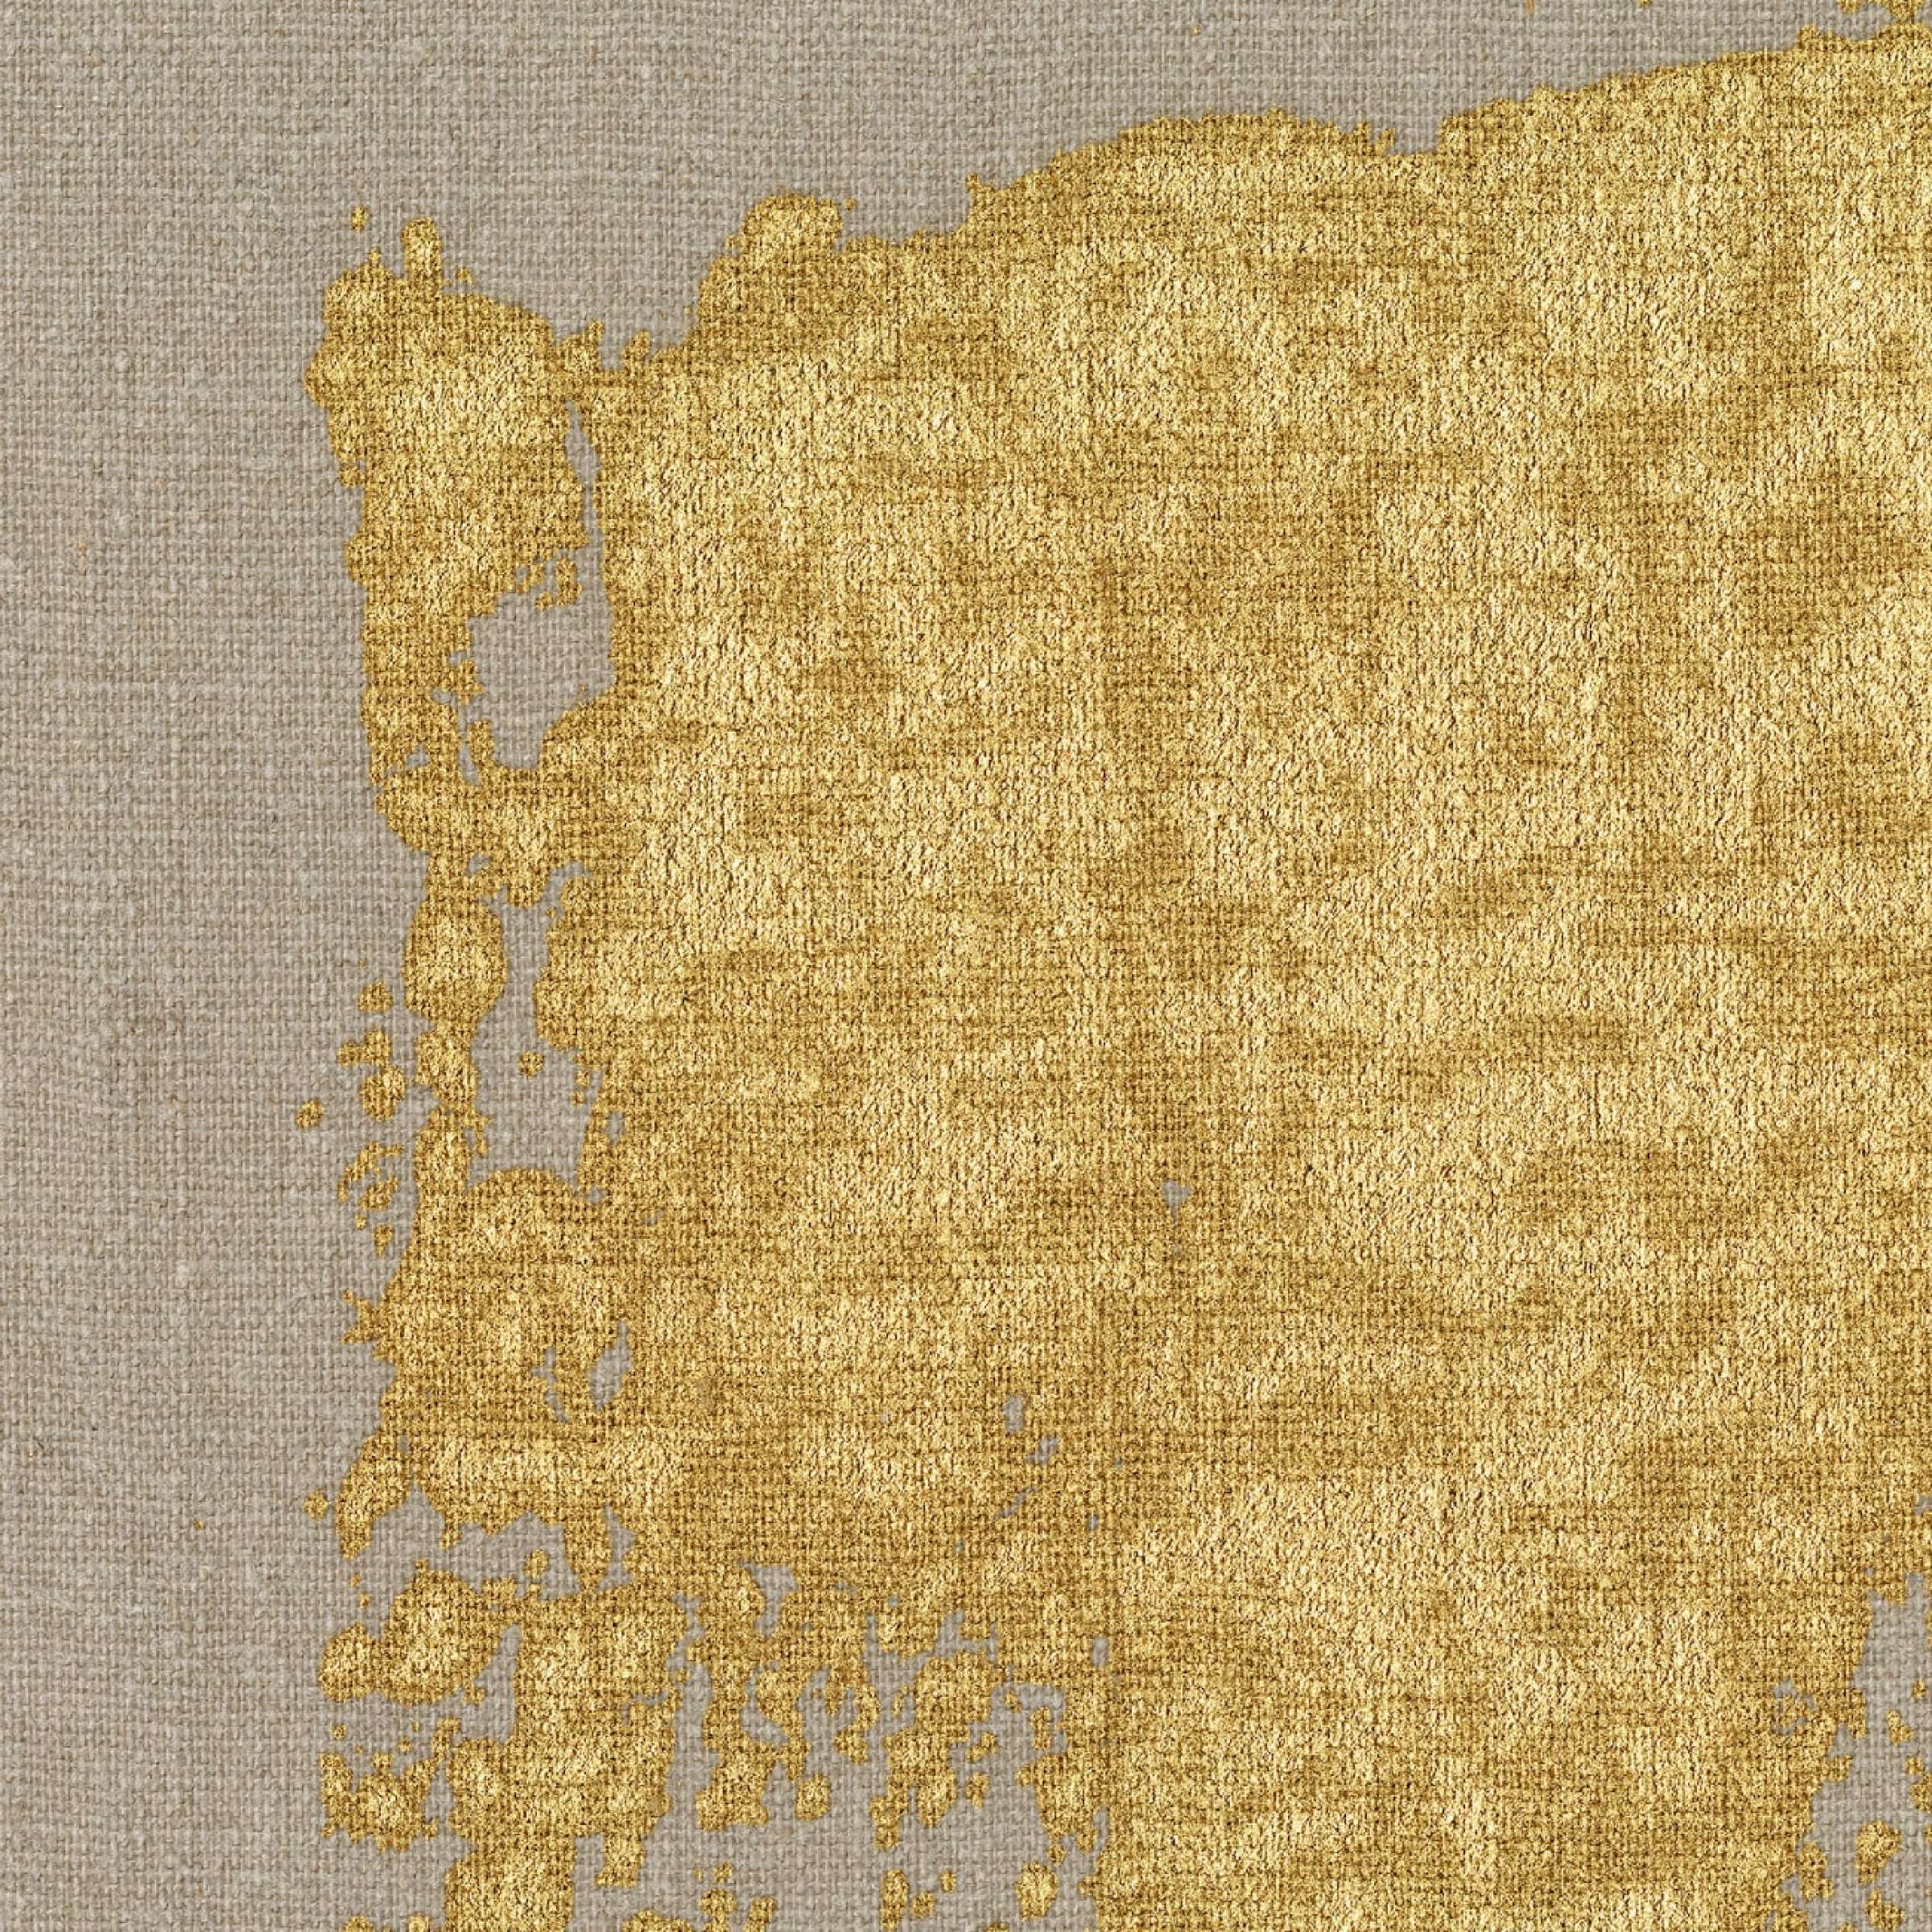 RM 1047 92 - De l'or en plaque